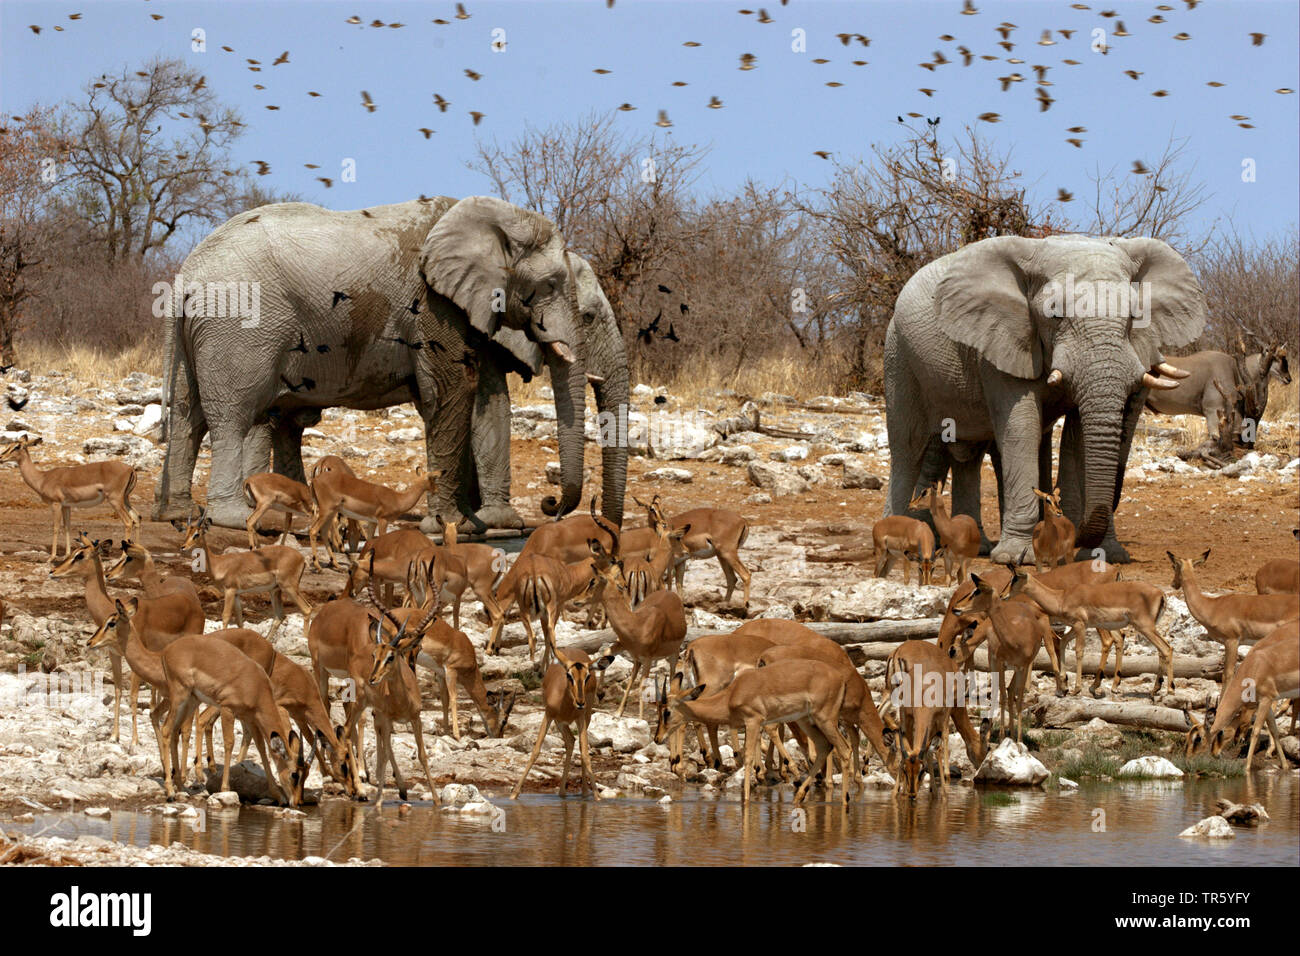 antelopes and elephants at a waterhole, Namibia, Etosha National Park Stock Photo